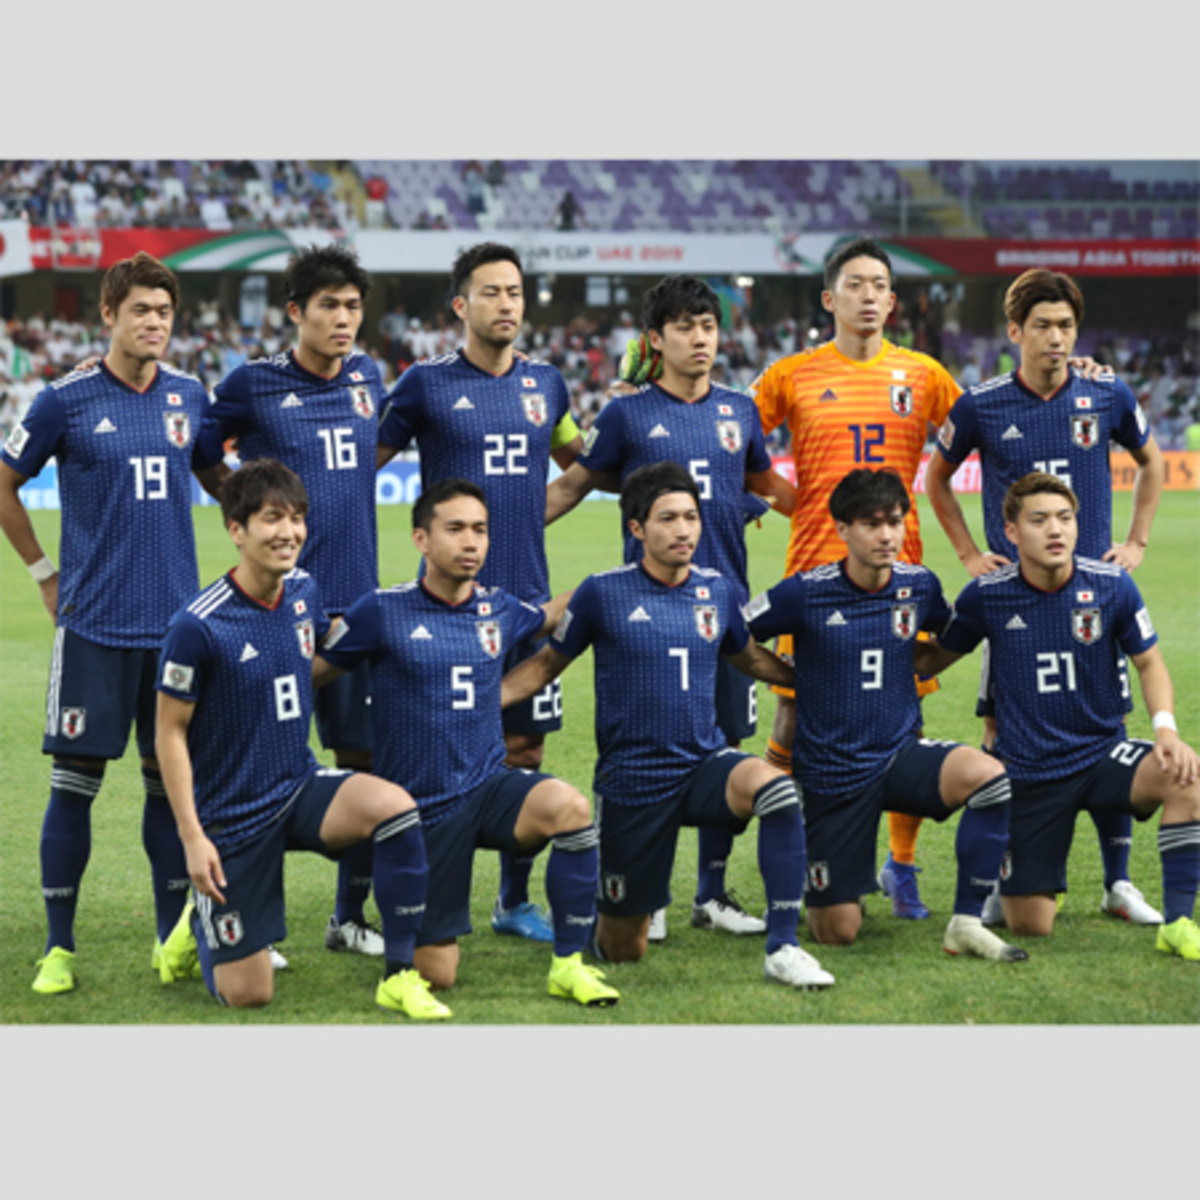 ナゼ迷彩柄 サッカー日本代表 新ユニフォーム に異論続出 Asagei Biz アサ芸ビズ